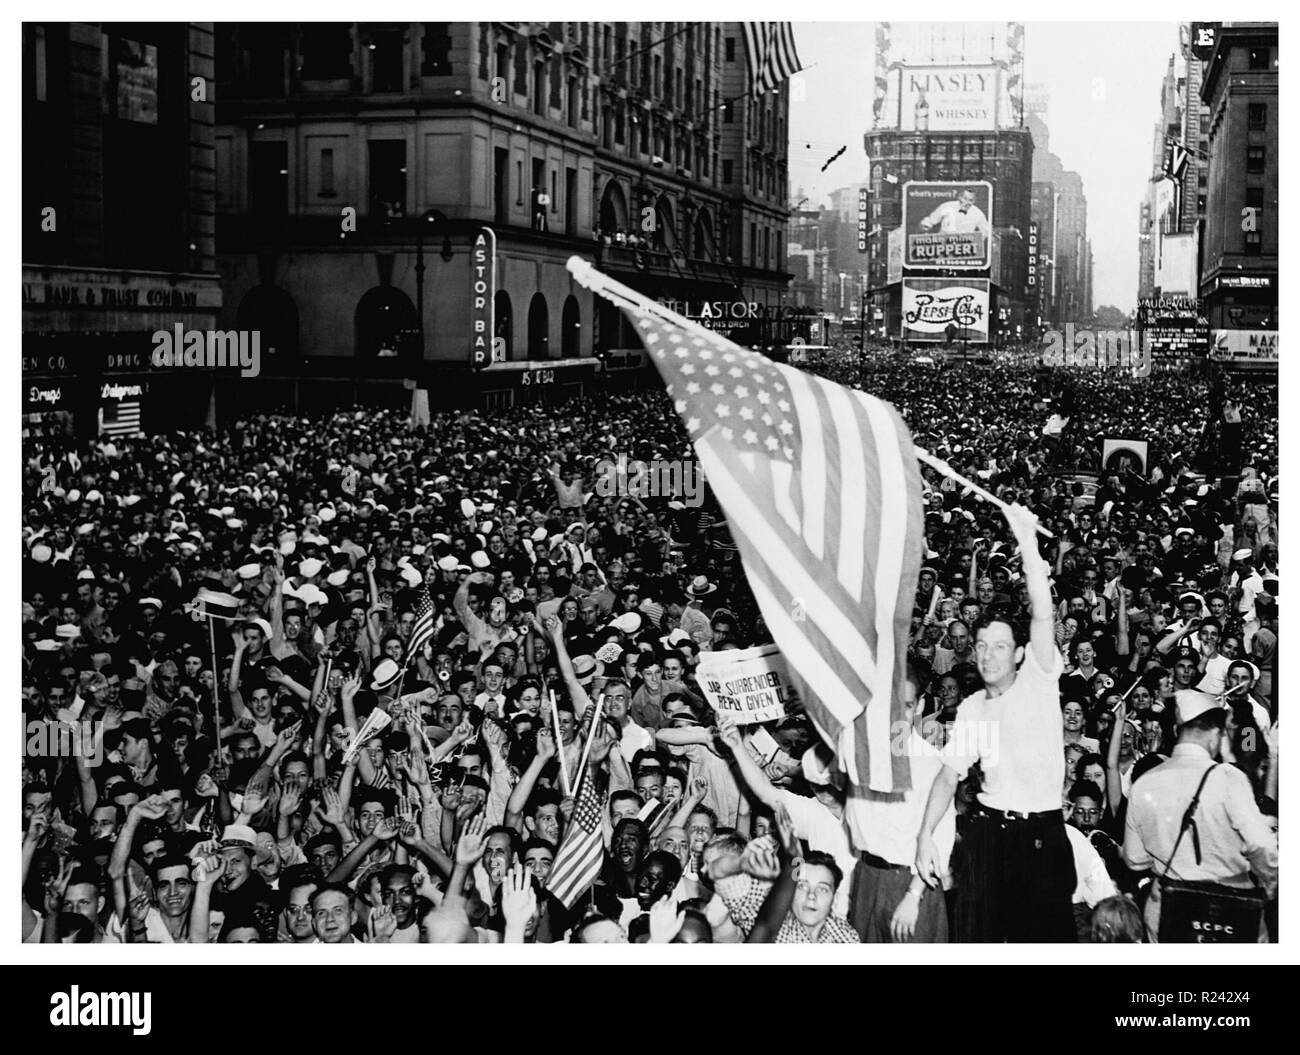 La ville de New York pour célébrer le Jour de la victoire à la fin de la seconde guerre mondiale au Japon 1945 Banque D'Images